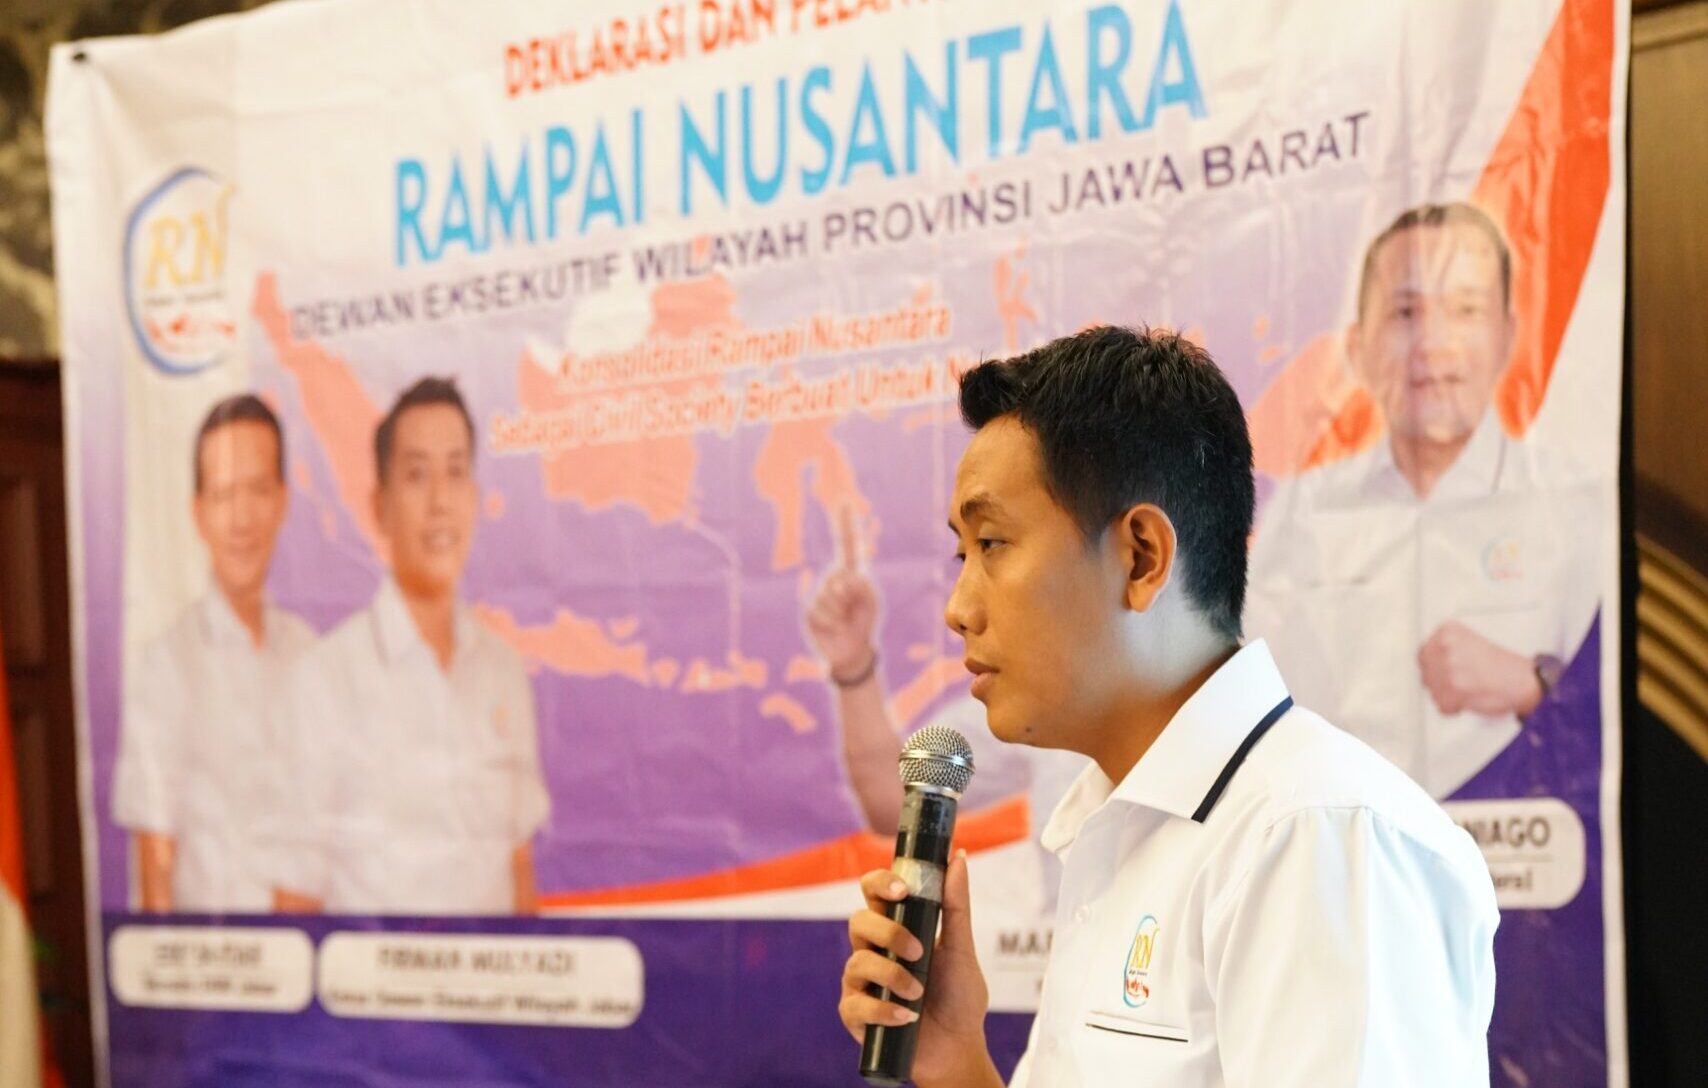 Ketua Rampai Nusantara wilayah Jawa Barat Firman Mulyadi